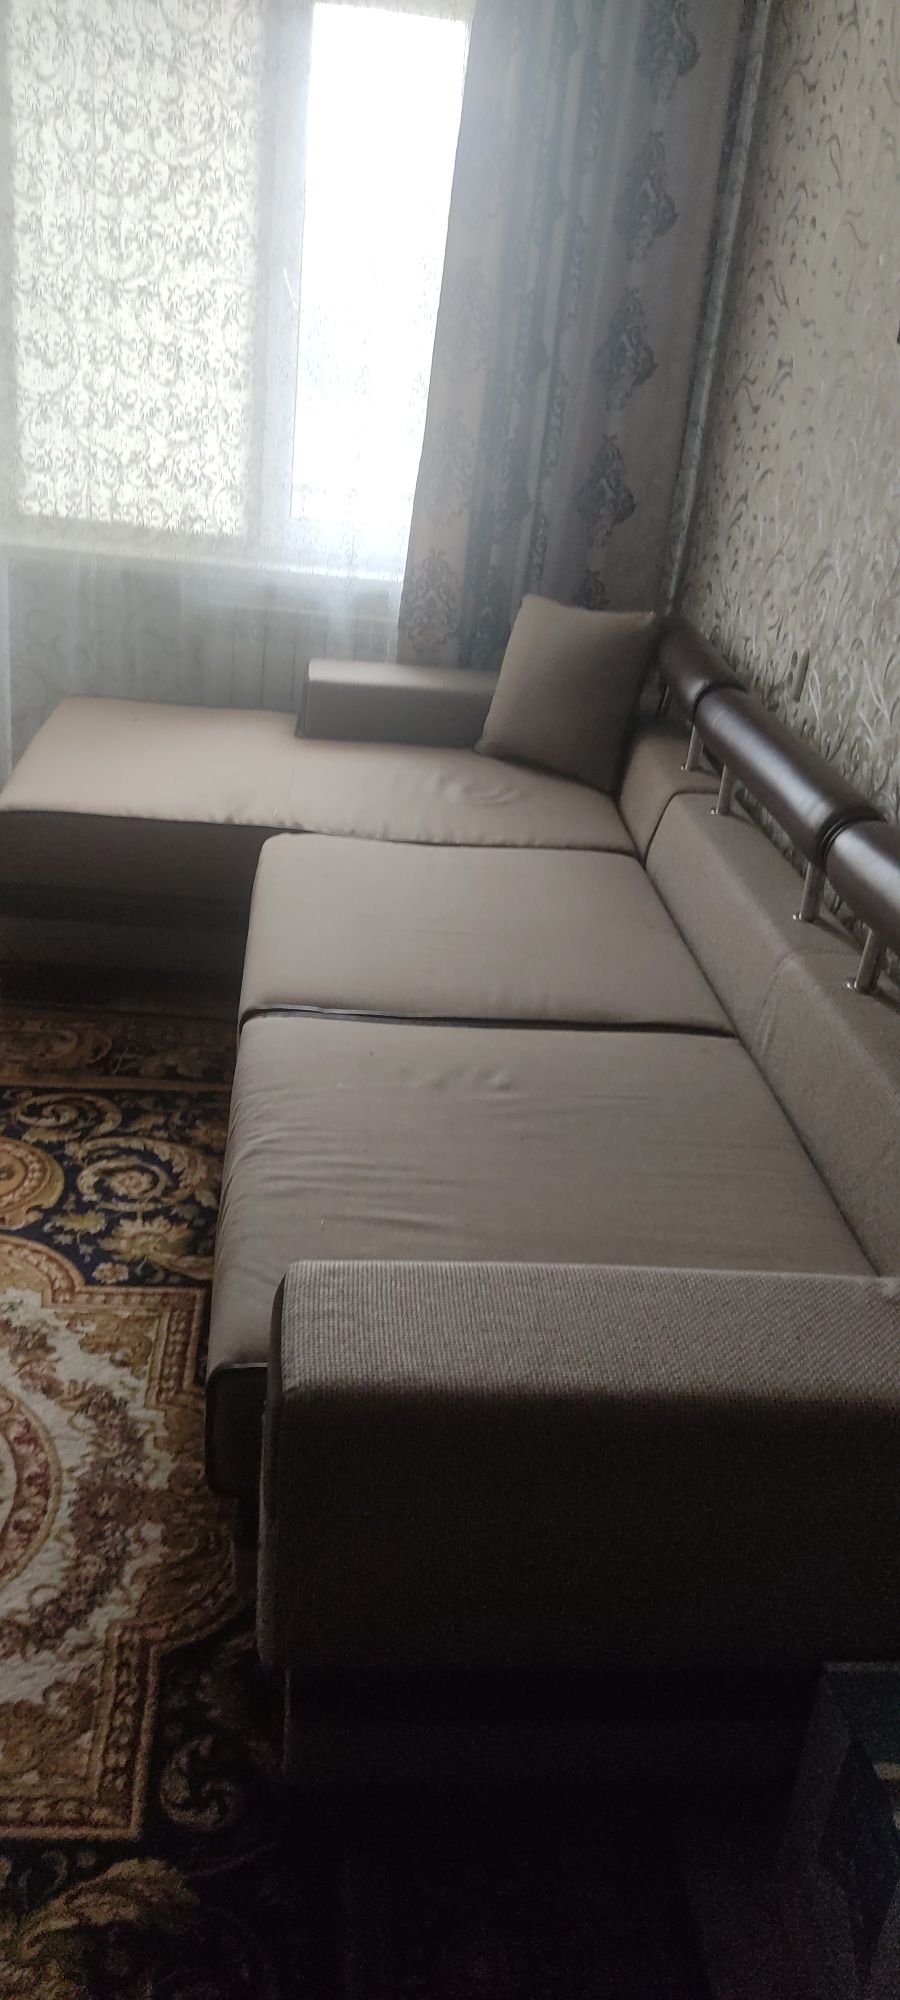 Мебель диван угловой